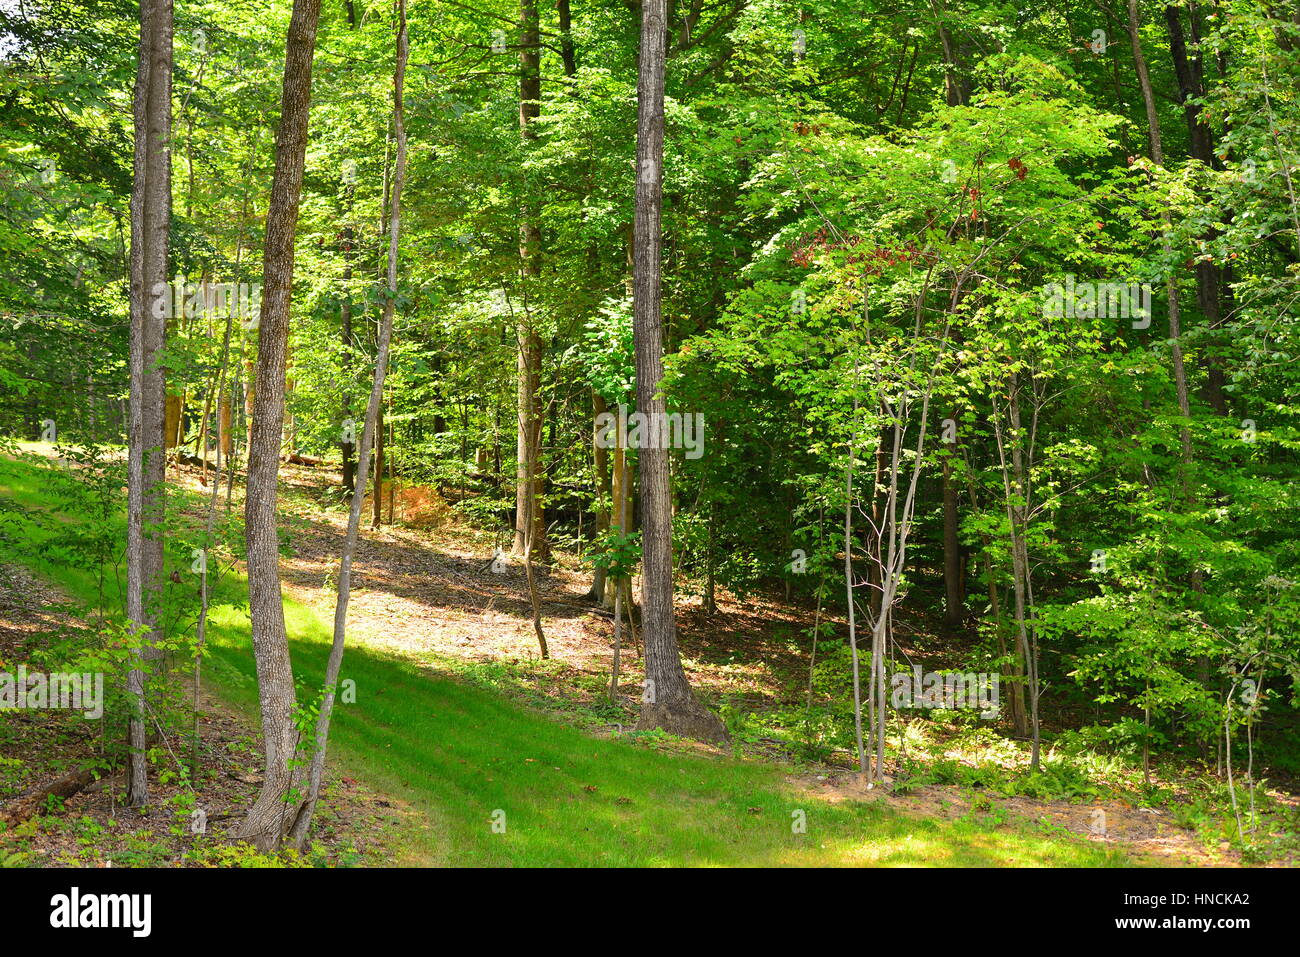 Ruhige, idyllische, friedliche Landschaft Bäume, Gras und Pflanzen, frei von Menschen in Stafford, Virginia, Vereinigte Staaten Stockfoto